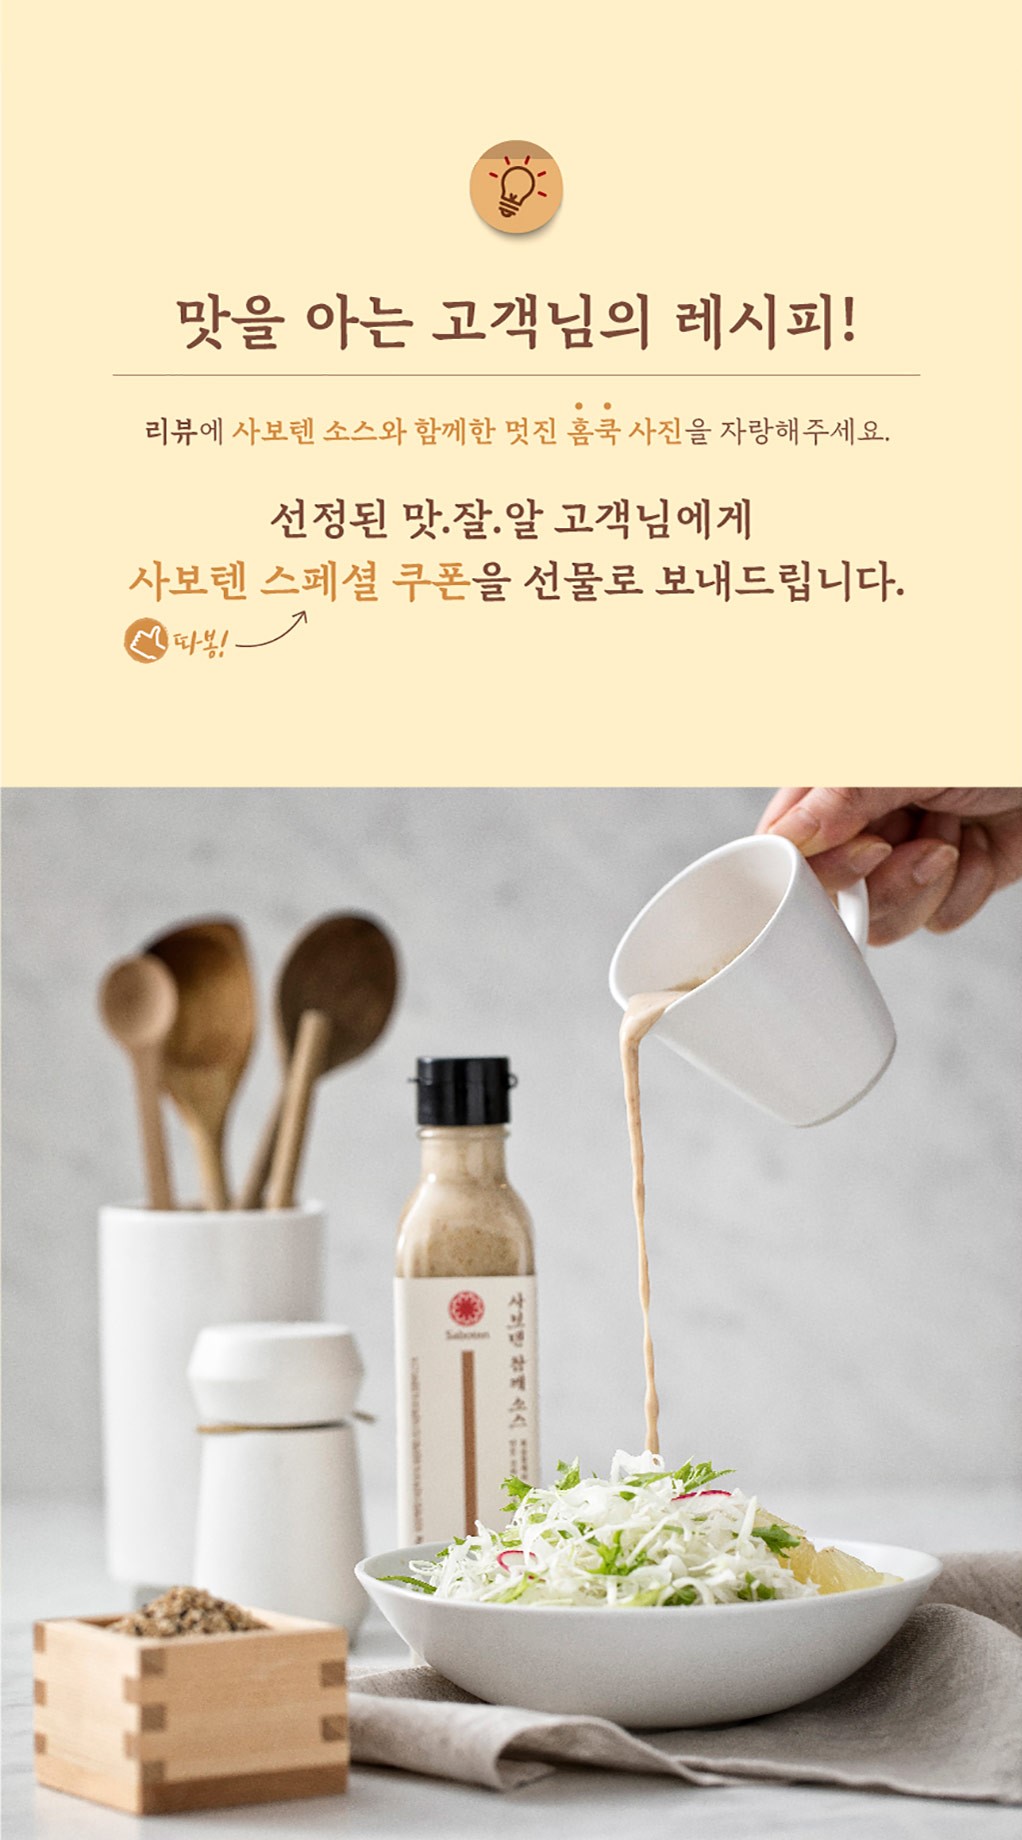 韓國食品-[사보텐] 참깨소스 200g